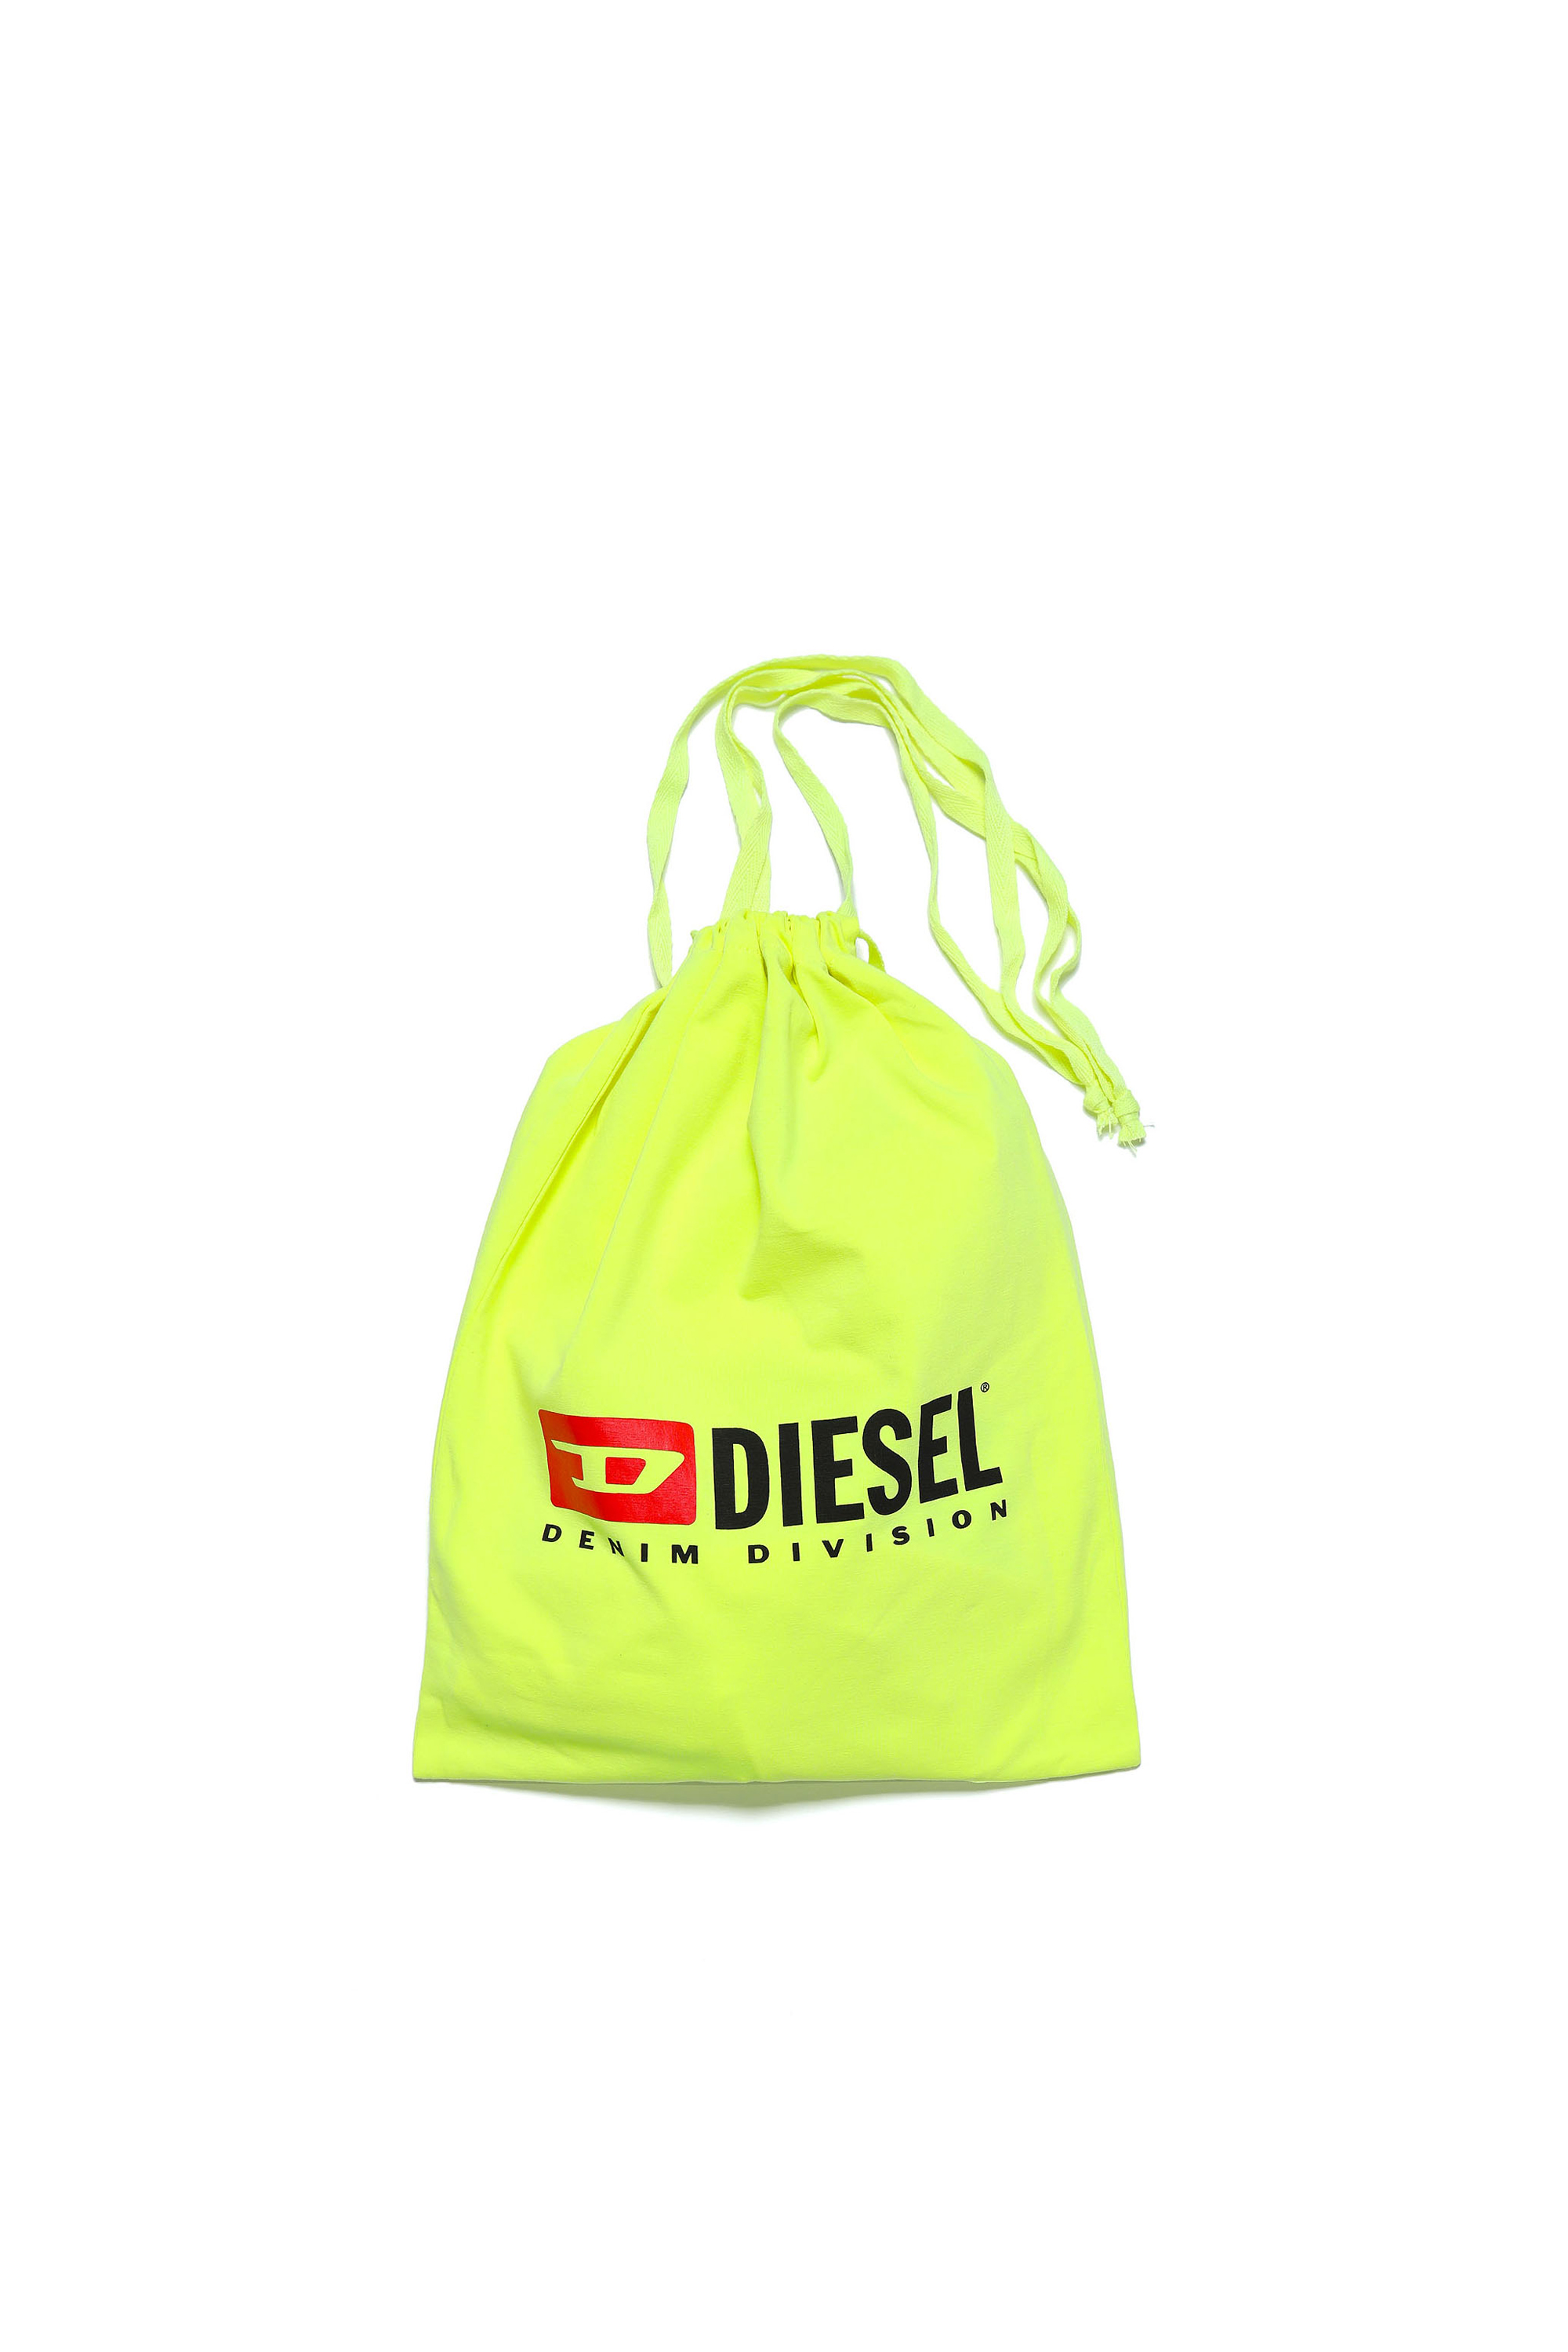 Diesel - UNJULIO MC, Yellow Fluo - Image 5